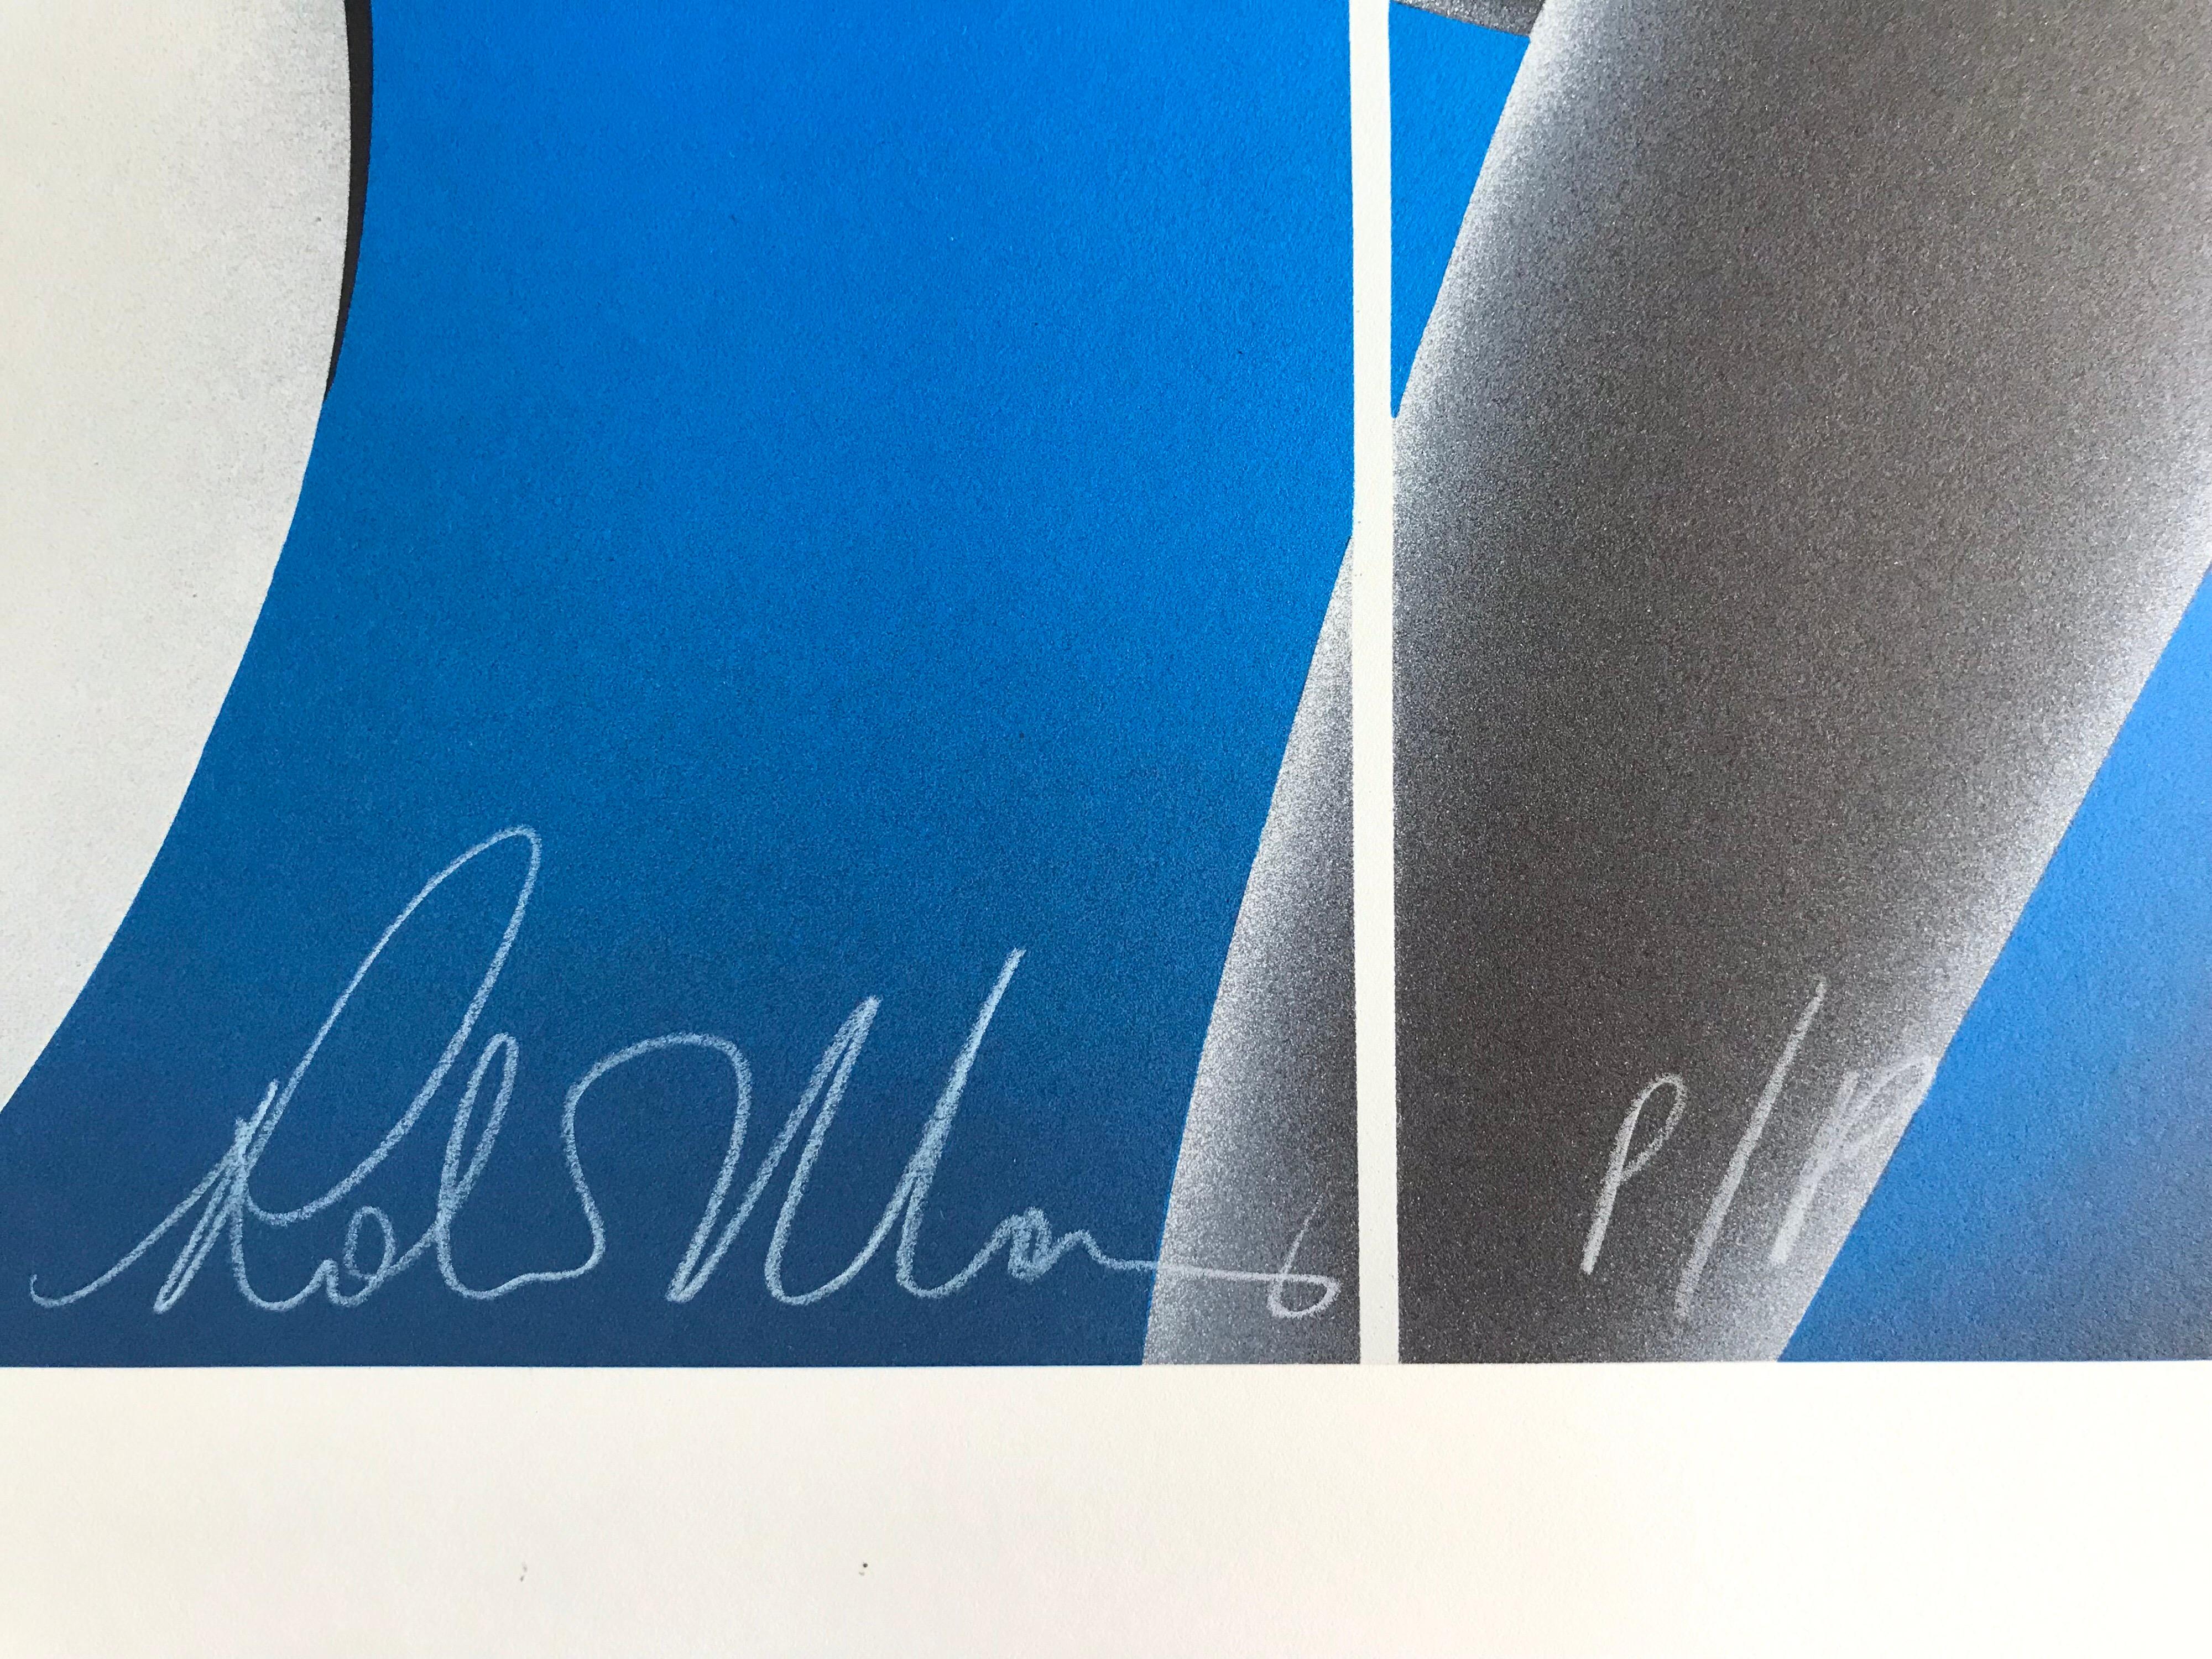 COOL BLUE ist eine originale, handgefertigte Lithographie in limitierter Auflage der Künstlerin Robin Morris, gedruckt im Handlithographie-Verfahren auf archivtauglichem Coventry-Papier, 100% säurefrei. Frau Morris nutzt ihren charakteristischen